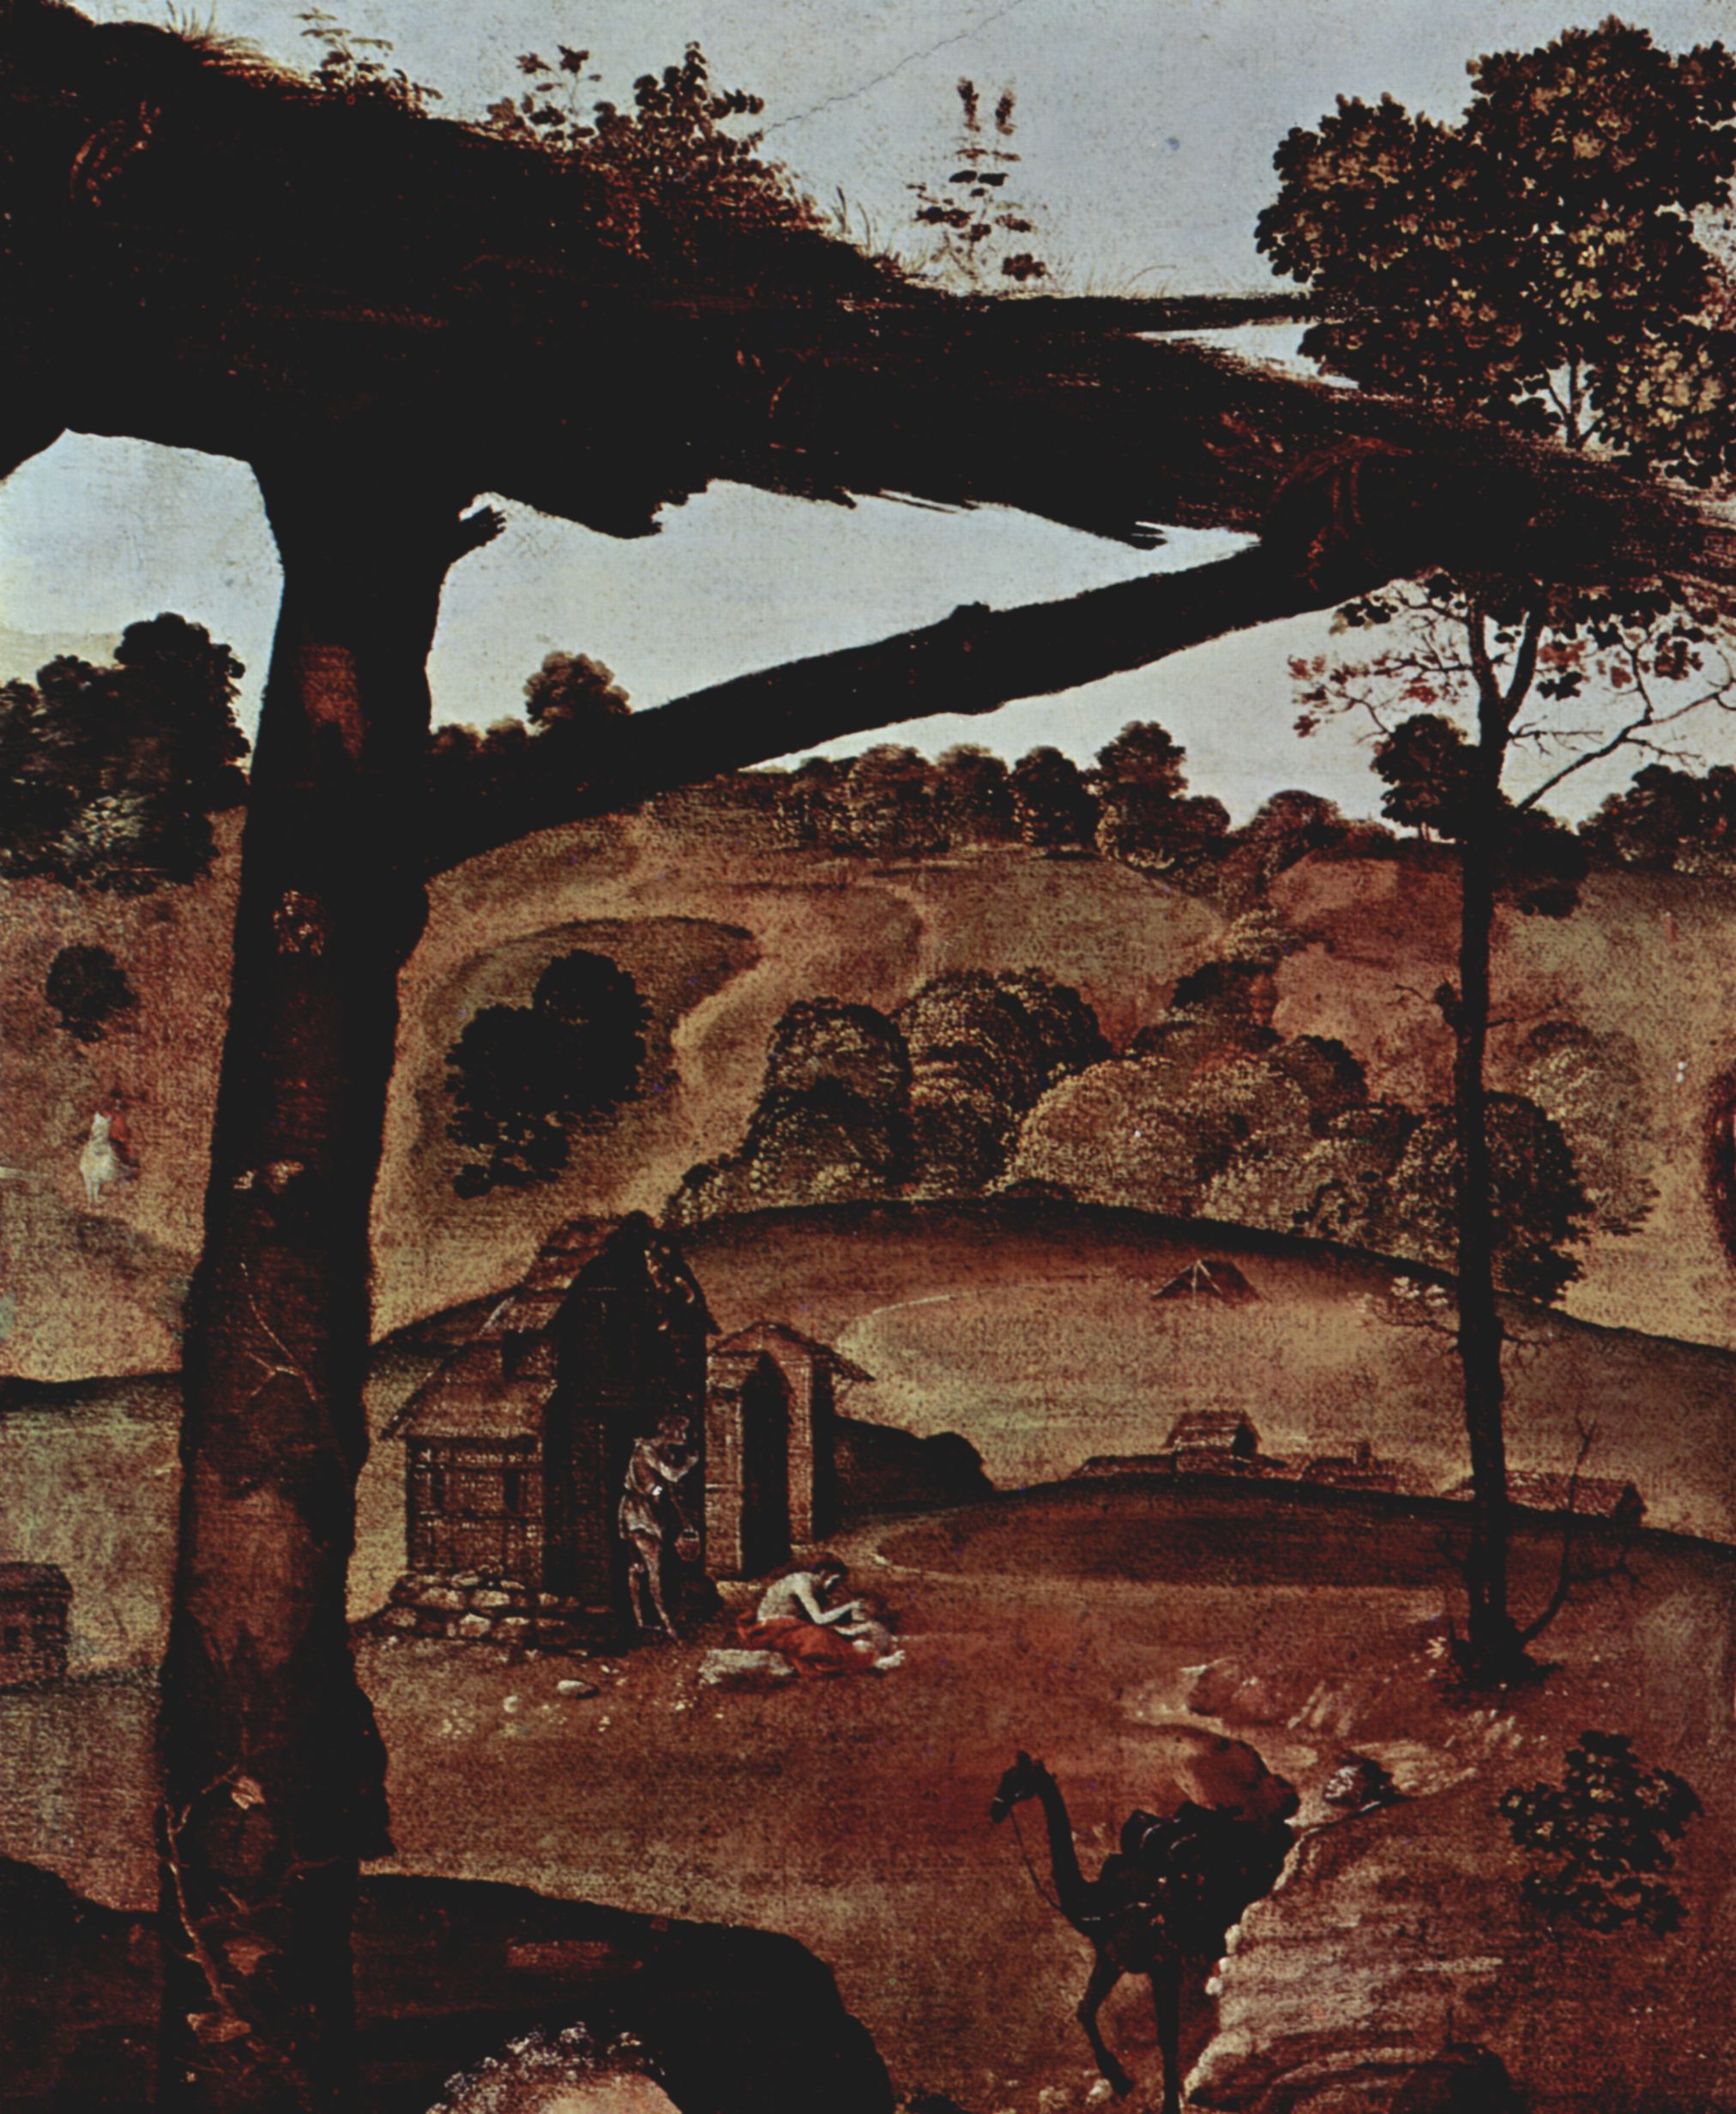 Piero di Cosimo: Bildfolge zur Frhgeschichte der Menschheit, Szene: Vulkanus (Hephaistos) und olus, Detail